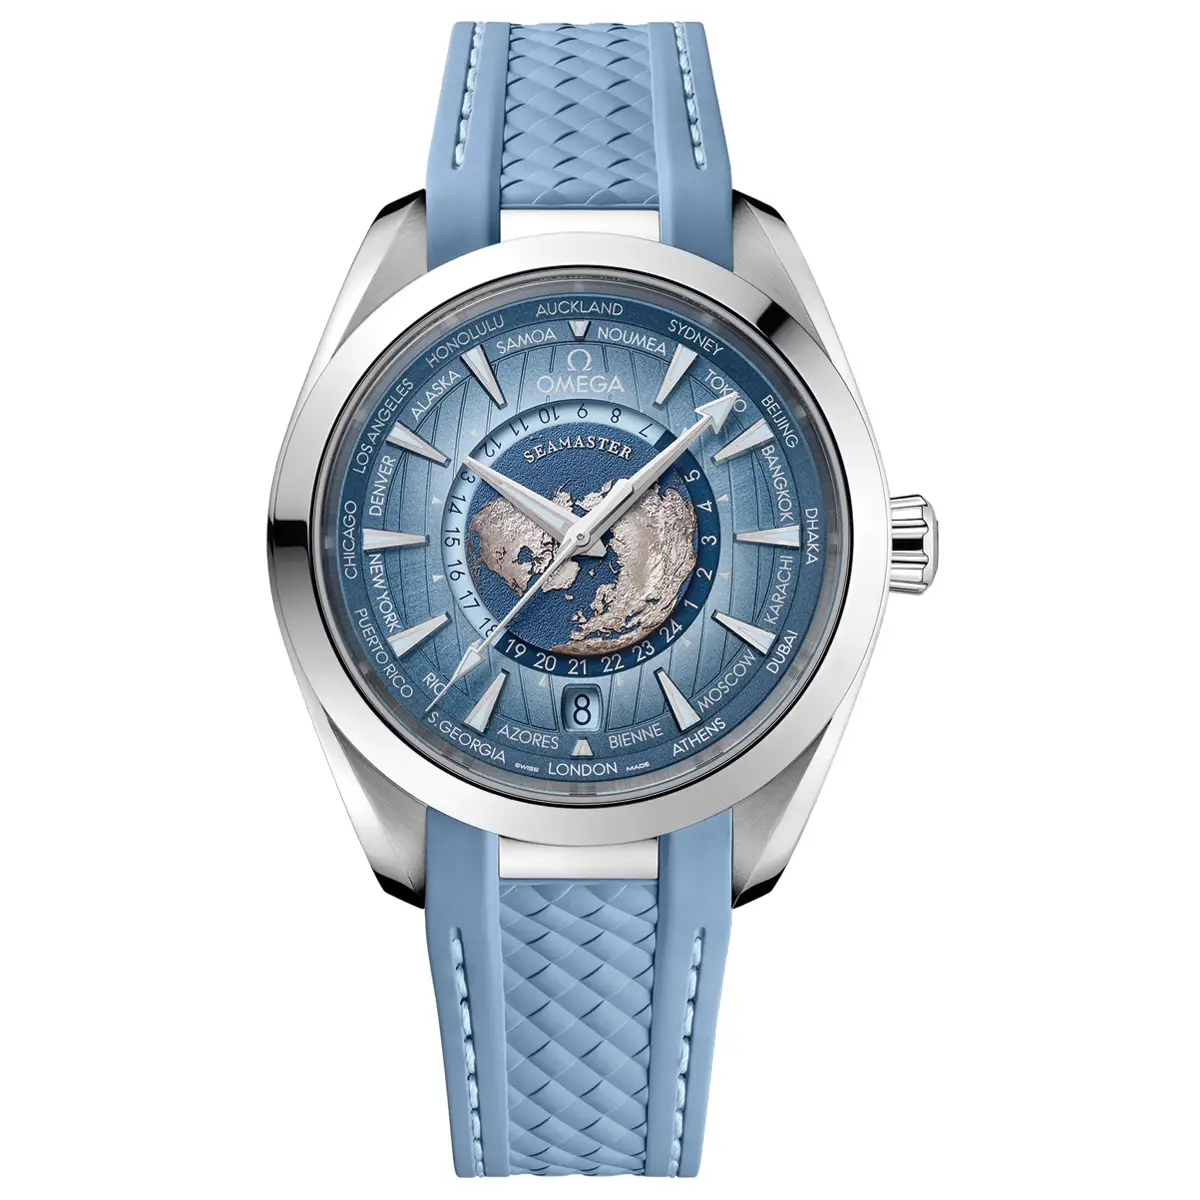 Đồng hồ Omega Seamaster Aqua Terra 150M GMT Worldtimer Summer Blue 220.12.43.22.03.002 mặt số màu xanh. Thiết kế lộ cơ. Dây đeo bằng cao su. Thân vỏ bằng thép.